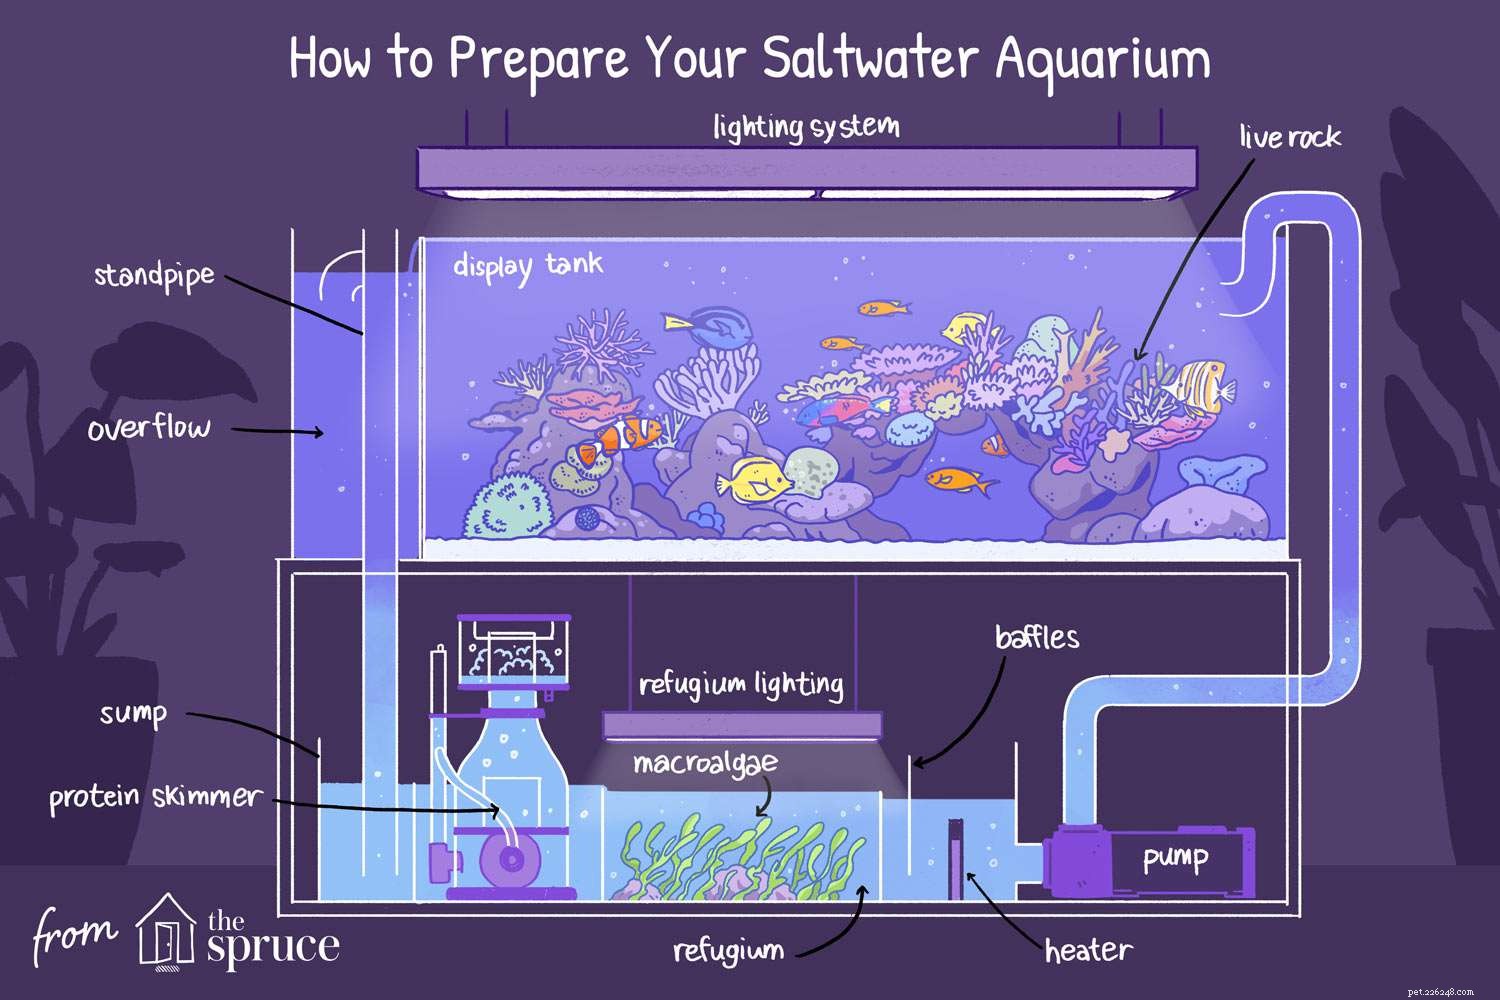 Instruktioner för att installera ett saltvattensakvarium